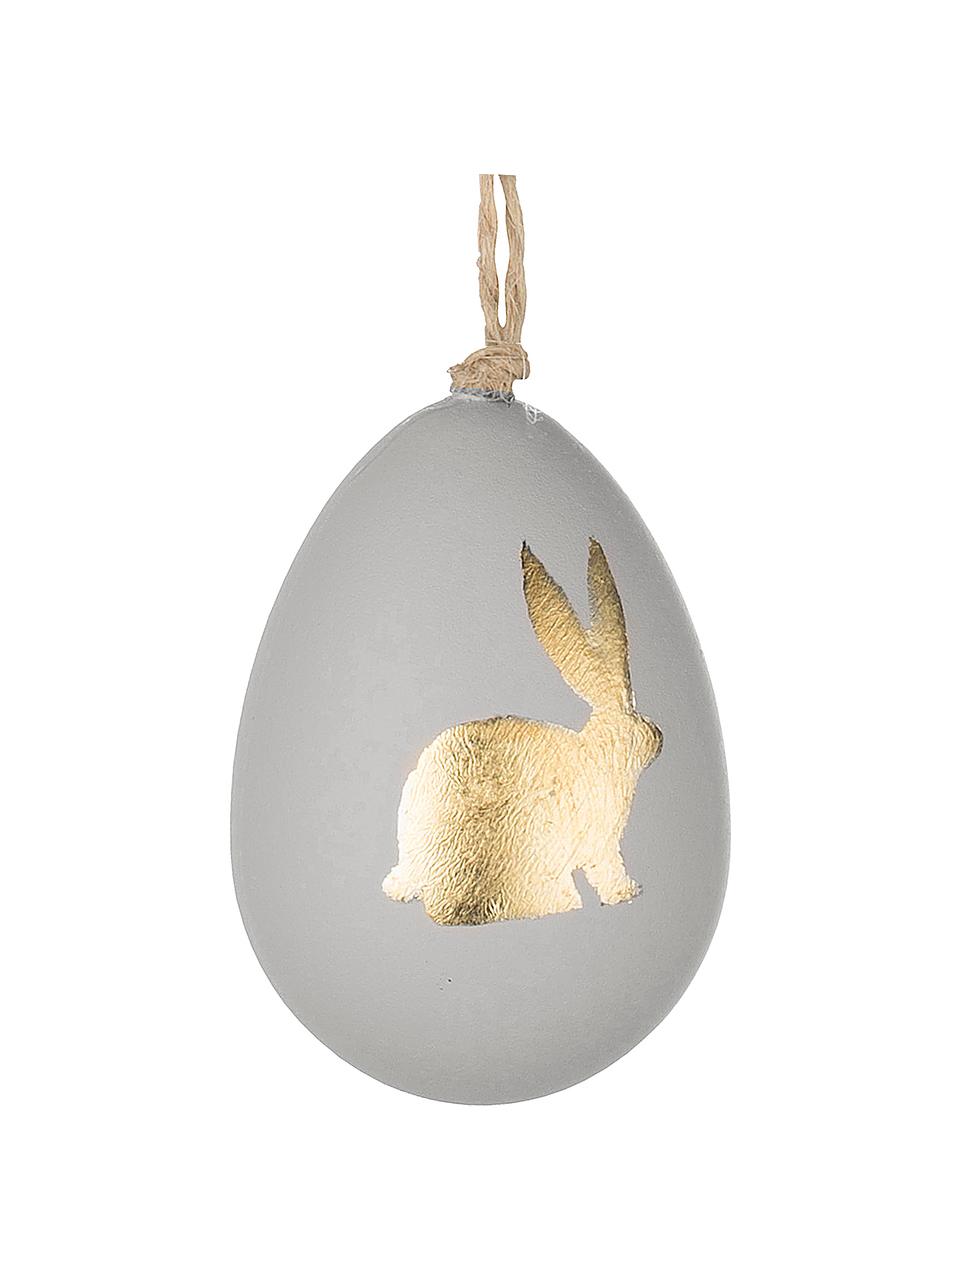 Dekoracja wisząca Bunny, 3 szt., Tworzywo sztuczne, Szary, odcienie złotego, Ø 4 x W 6 cm